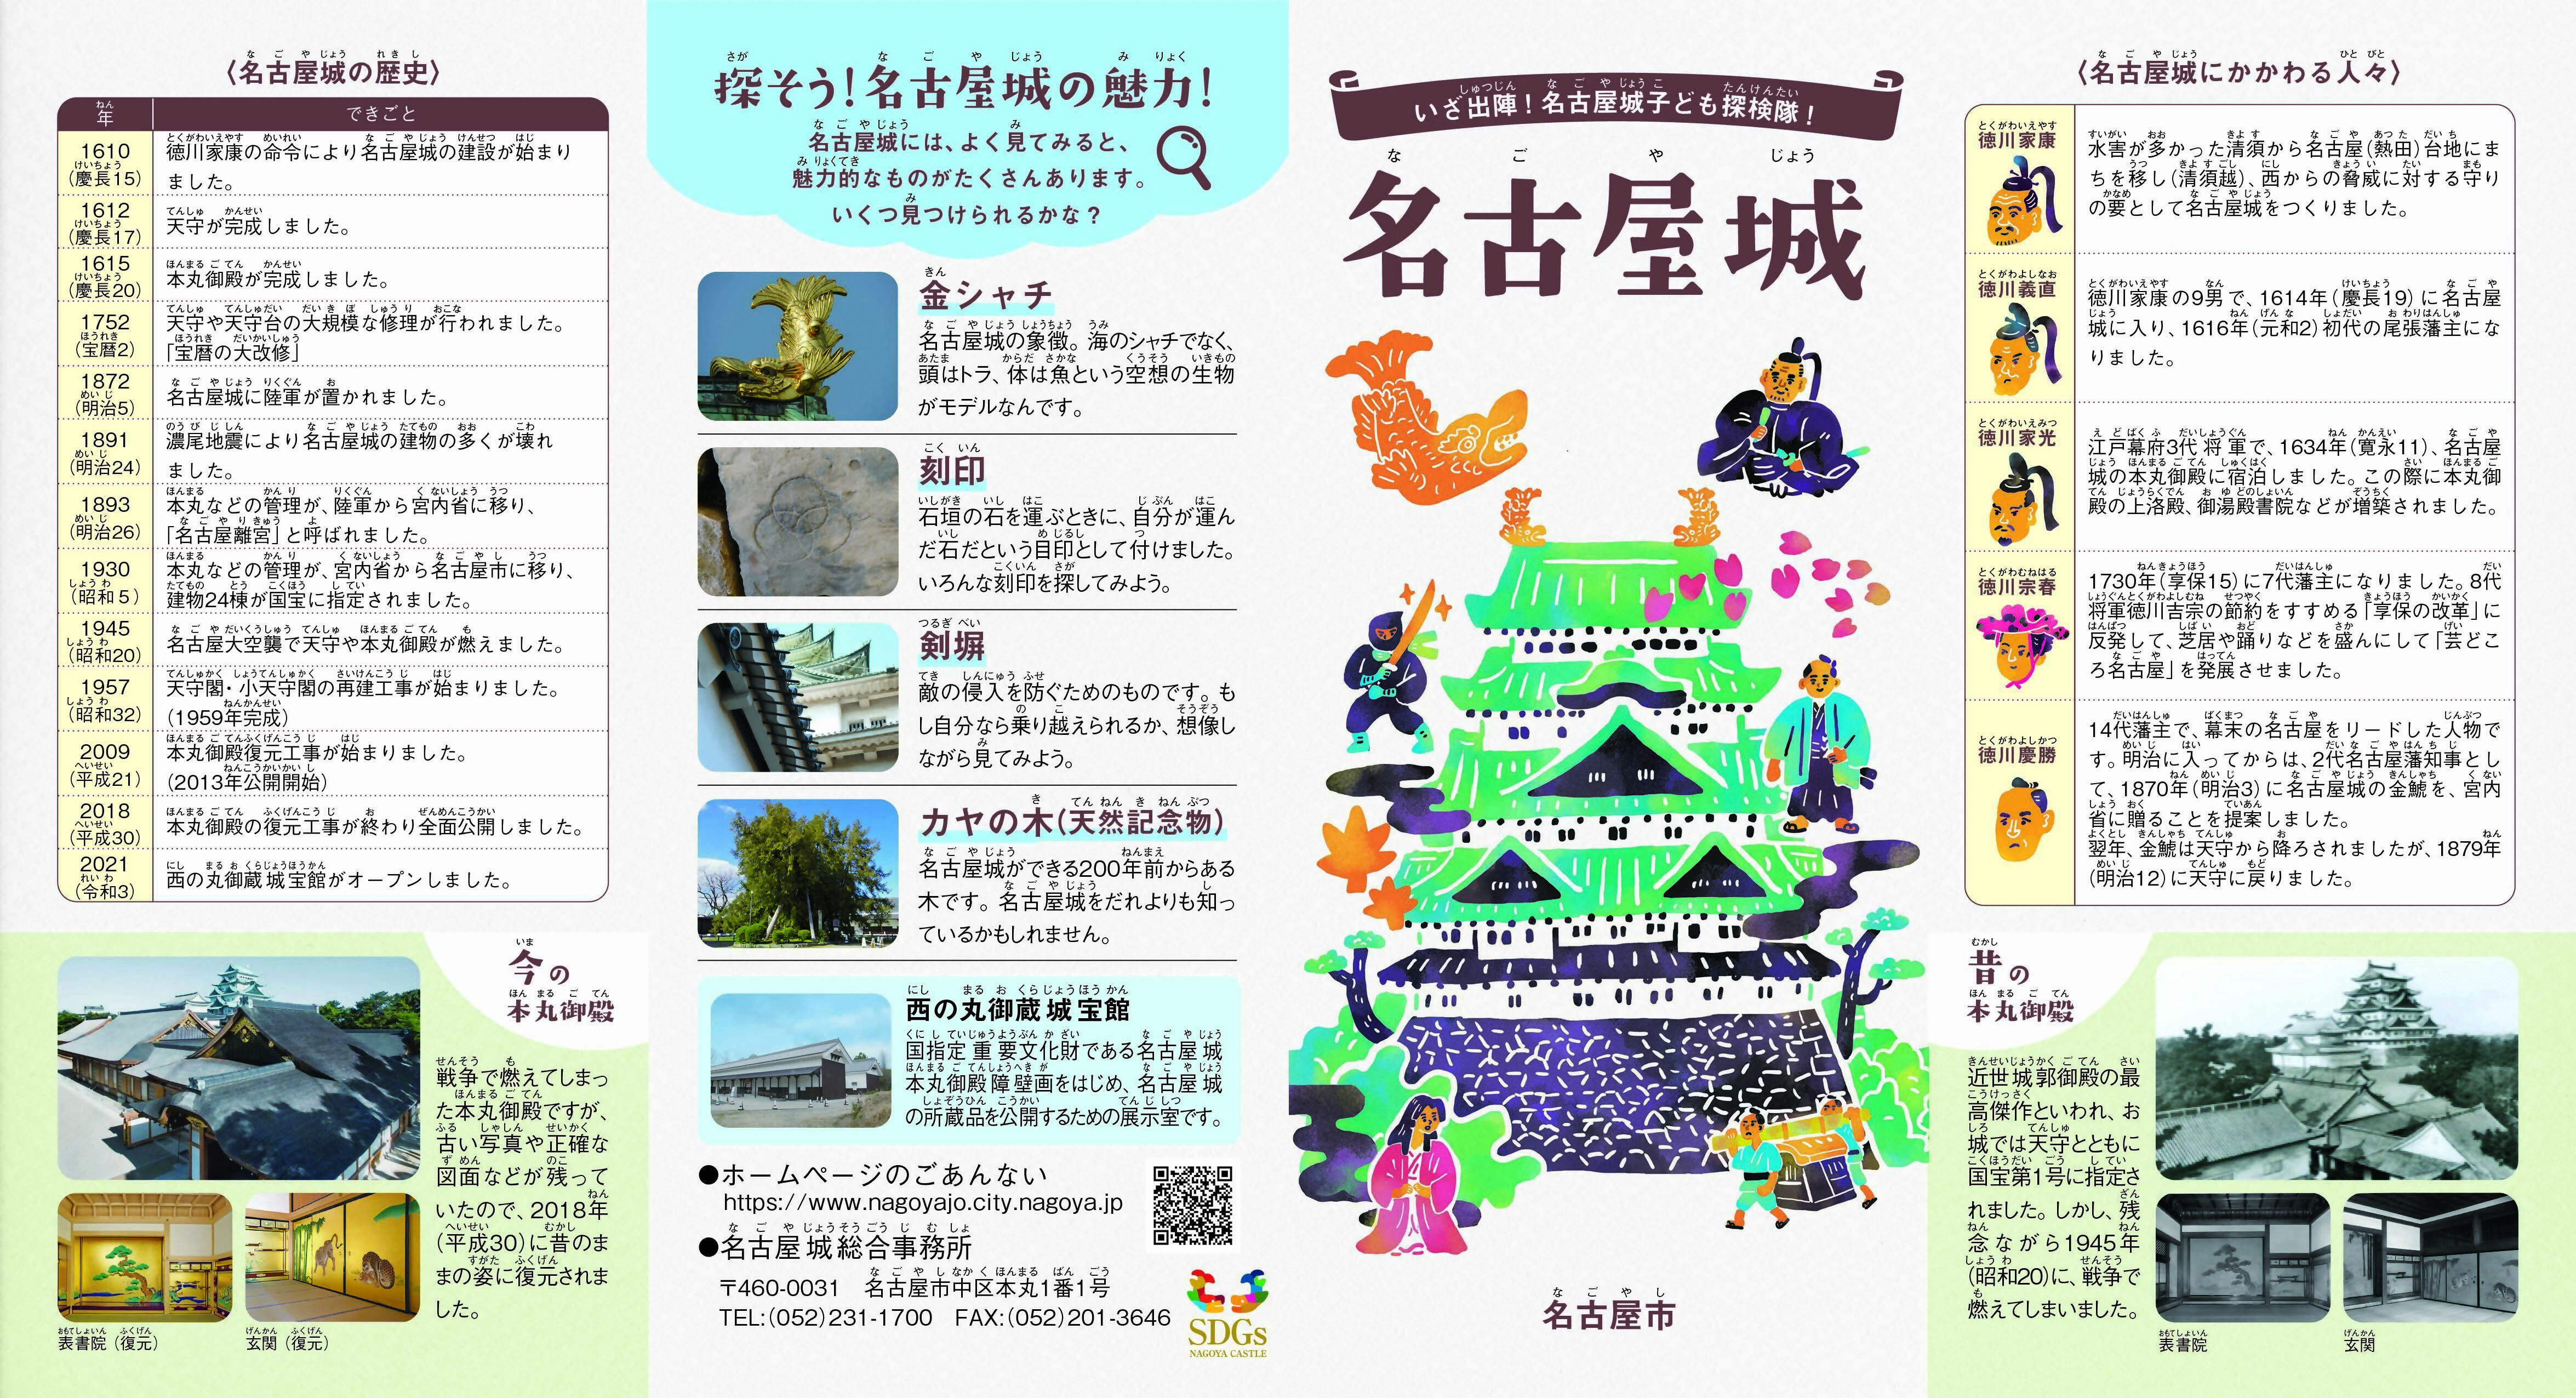 nagoyajyo_kodomo_leaflet_omote_無害化済_無害化済.jpg